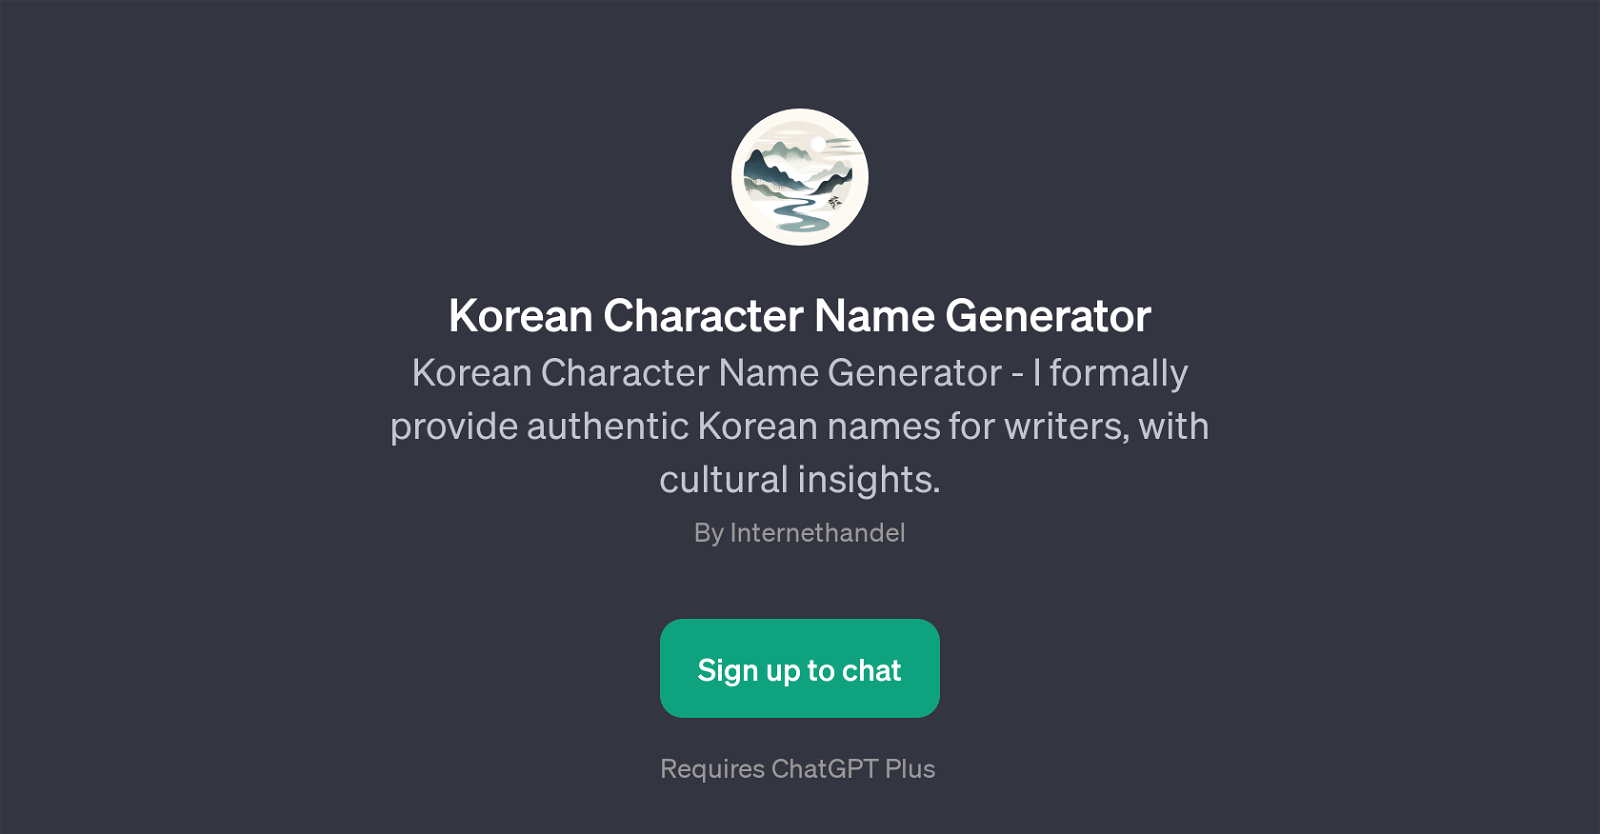 Korean Character Name Generator website